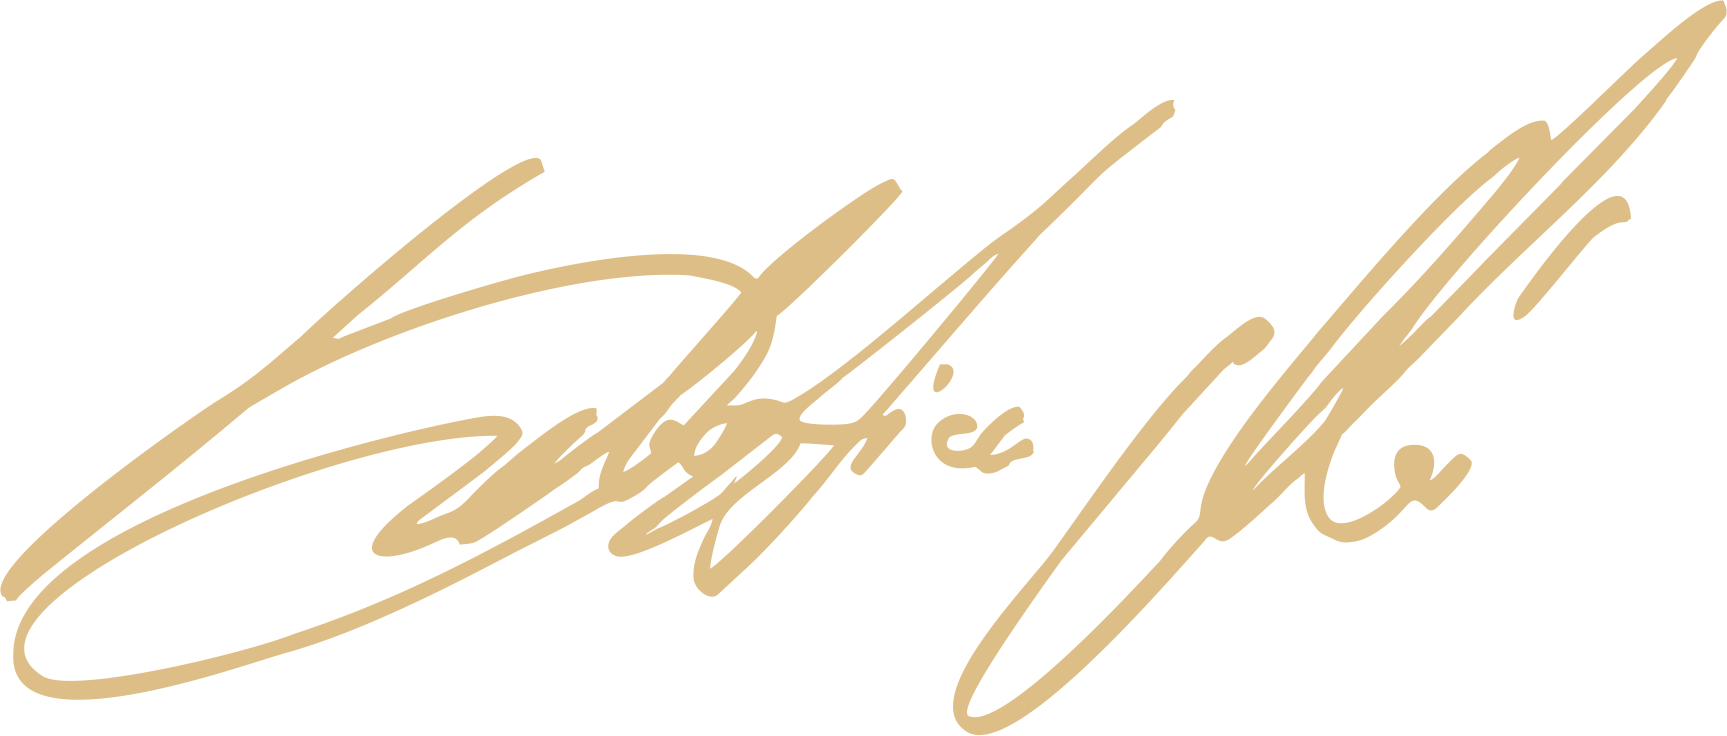 Sebastian Moń - podpis